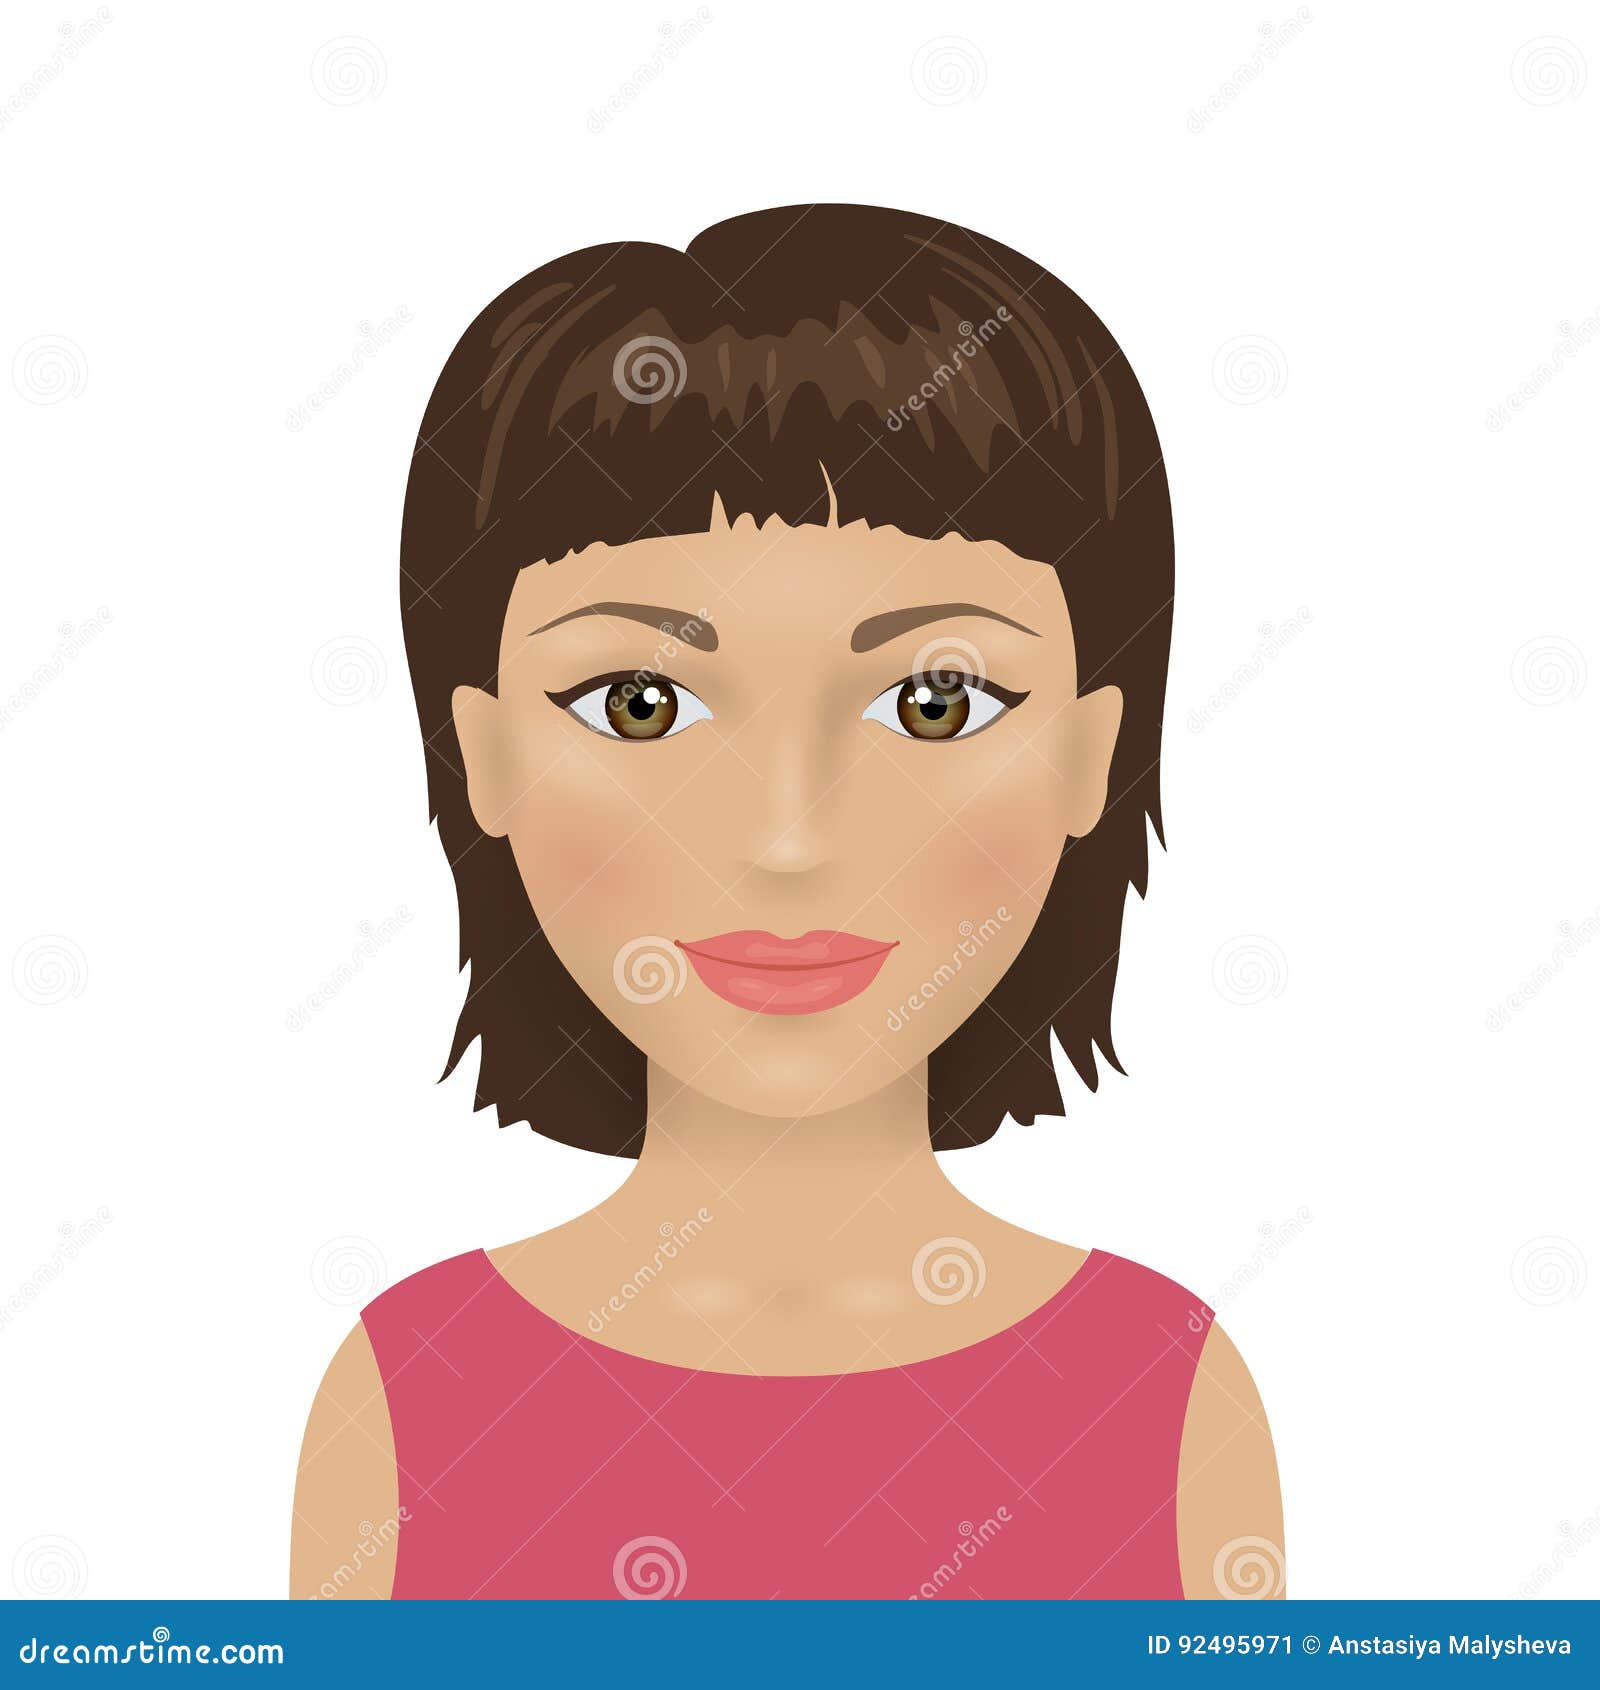 Human Face Avatar Icon Hồ Sơ Cho Mạng Xã Hội Người Phụ Nữ Minh Họa Vector  Hình minh họa Sẵn có  Tải xuống Hình ảnh Ngay bây giờ  iStock